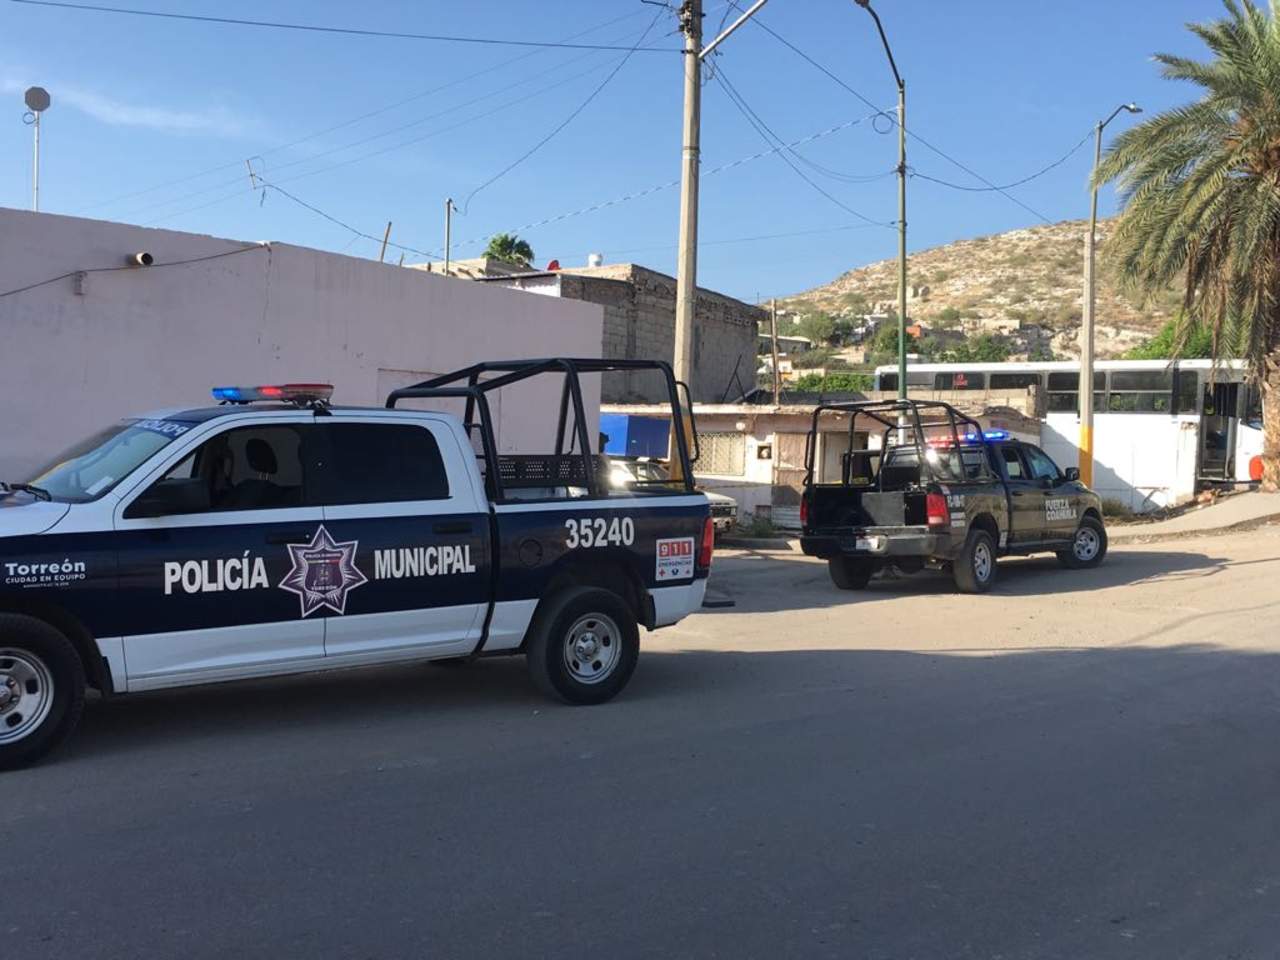 Al lugar acudieron elementos de la Dirección de Seguridad Pública Municipal y de Fuerza Coahuila, mismos que se encargaron de acordonar el área. (EL SIGLO DE TORREÓN)